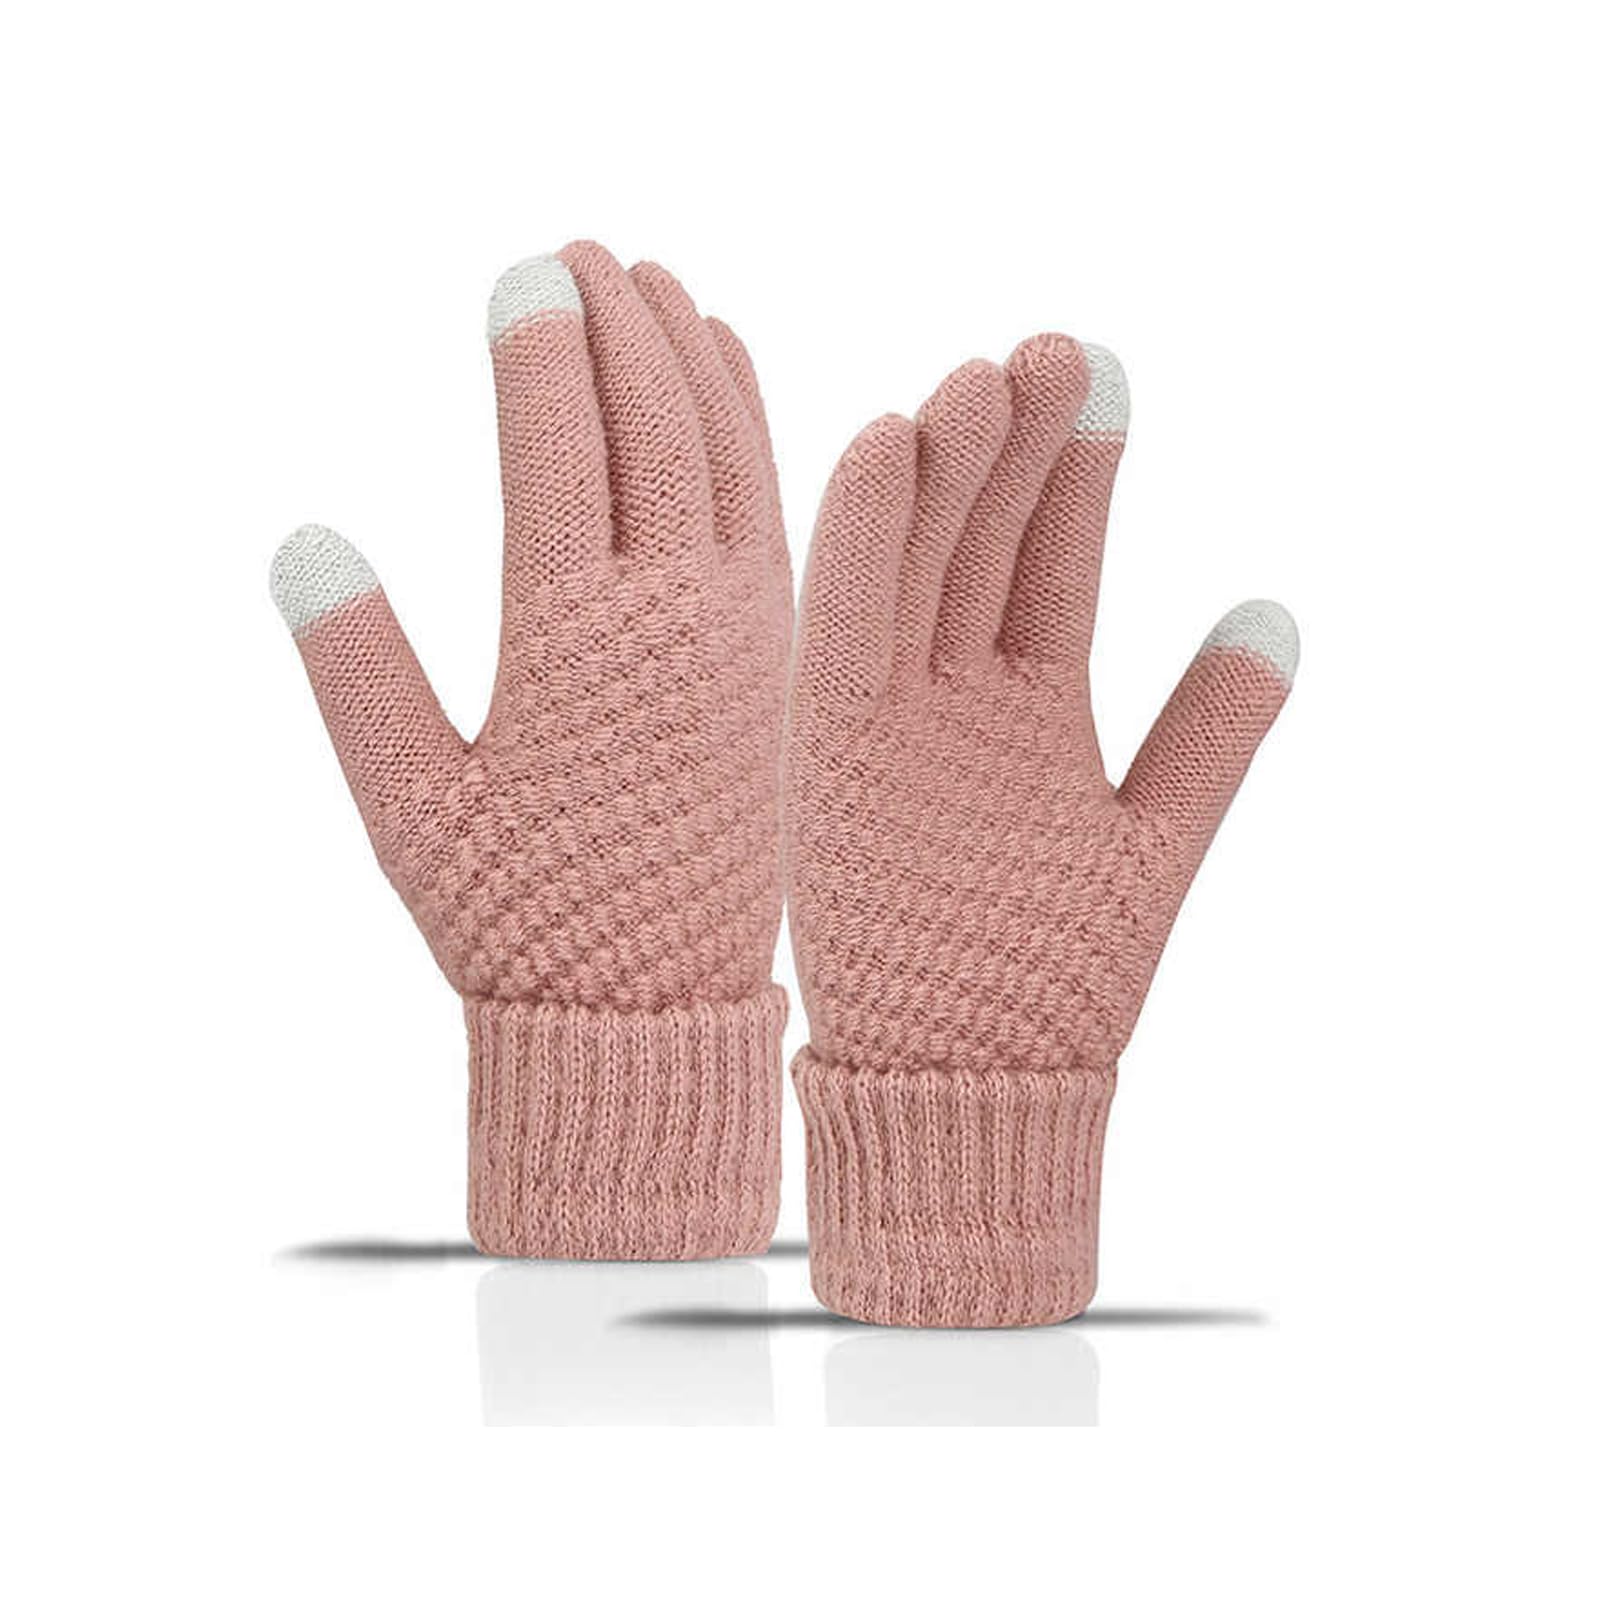 商品情報商品の説明【手袋サイズ】 全長：21cm 手のひら幅：8cm 手首幅：9.5cm 【選べるカラーバリエーション】 グレー、ブラック、ホワイト、イエロー 寒い冬のおしゃれアイテムとして、必須のアイテムです。この暖かい手袋は、レディースのための最高の防寒手袋です。 【自然を楽しみます】 冬でも、グローブを持って自然を満喫し、ハイキング、スキー、ゴルフ、サイクリング、外出に出かけましょう。 探検し、発見し、愛して冬を守ります。 ふわふわの裏起毛素材が暖かさをキープし、寒さ知らずの快適さを提供します。また、洗濯も簡単でお手入れが簡単です。 かわいいデザインなので、自分用はもちろん、家族や友人への真冬のギフトとしても最適です。主な仕様 【暖かく快適＆防風防寒?】レディース手袋の表面はニットブレンド地で作られており、柔らかくて毛玉がふわふわ。柔らかく指を包みこんでくれる着心地に満足いただけます。 裏起毛手袋暖かいのに蒸れずに快適な履き心地。 袖口は二重仕立てで冷たい風の侵入を防ぎます。br【デイリーファッションにぴったり】今年はパイナップルスタイルが大人気！ パイナップルの質感が手の形に自然に馴染みとても可愛いです。 無地は4色から選べる汎用性が高く、通勤、通学、自転車、登山などの場合にも使えます。 日常生活にスタイリッシュなアイテムを。br【洗濯簡単】手洗いには手袋が変形しにくいので、お手洗いがおすすめです。洗濯機の場合は、ネットに入れて頂く事をおすすめしています。干す際にはなるべく平干しを心がけてください。br【タッチスクリーンデザイン】手袋 レディース スマホ対応 、両手手袋の親指と人差し指の指先は特殊な導電性糸で設計されており、電子画面に触れると敏感に反応するため、手袋を外さずにスマートフォンやタブレットを使用できます。br【家族・友人への真冬ギフト?】全長：21cm、中指が長い：8cm、手のひら幅：9.5cm。伸縮性があり、サイズはすべての人に適しています。クリスマスプレゼントや誕生日プレゼントとして彼女・家族・友人・クラスメートに送り、暖かく感じる共に温かい気持ち。